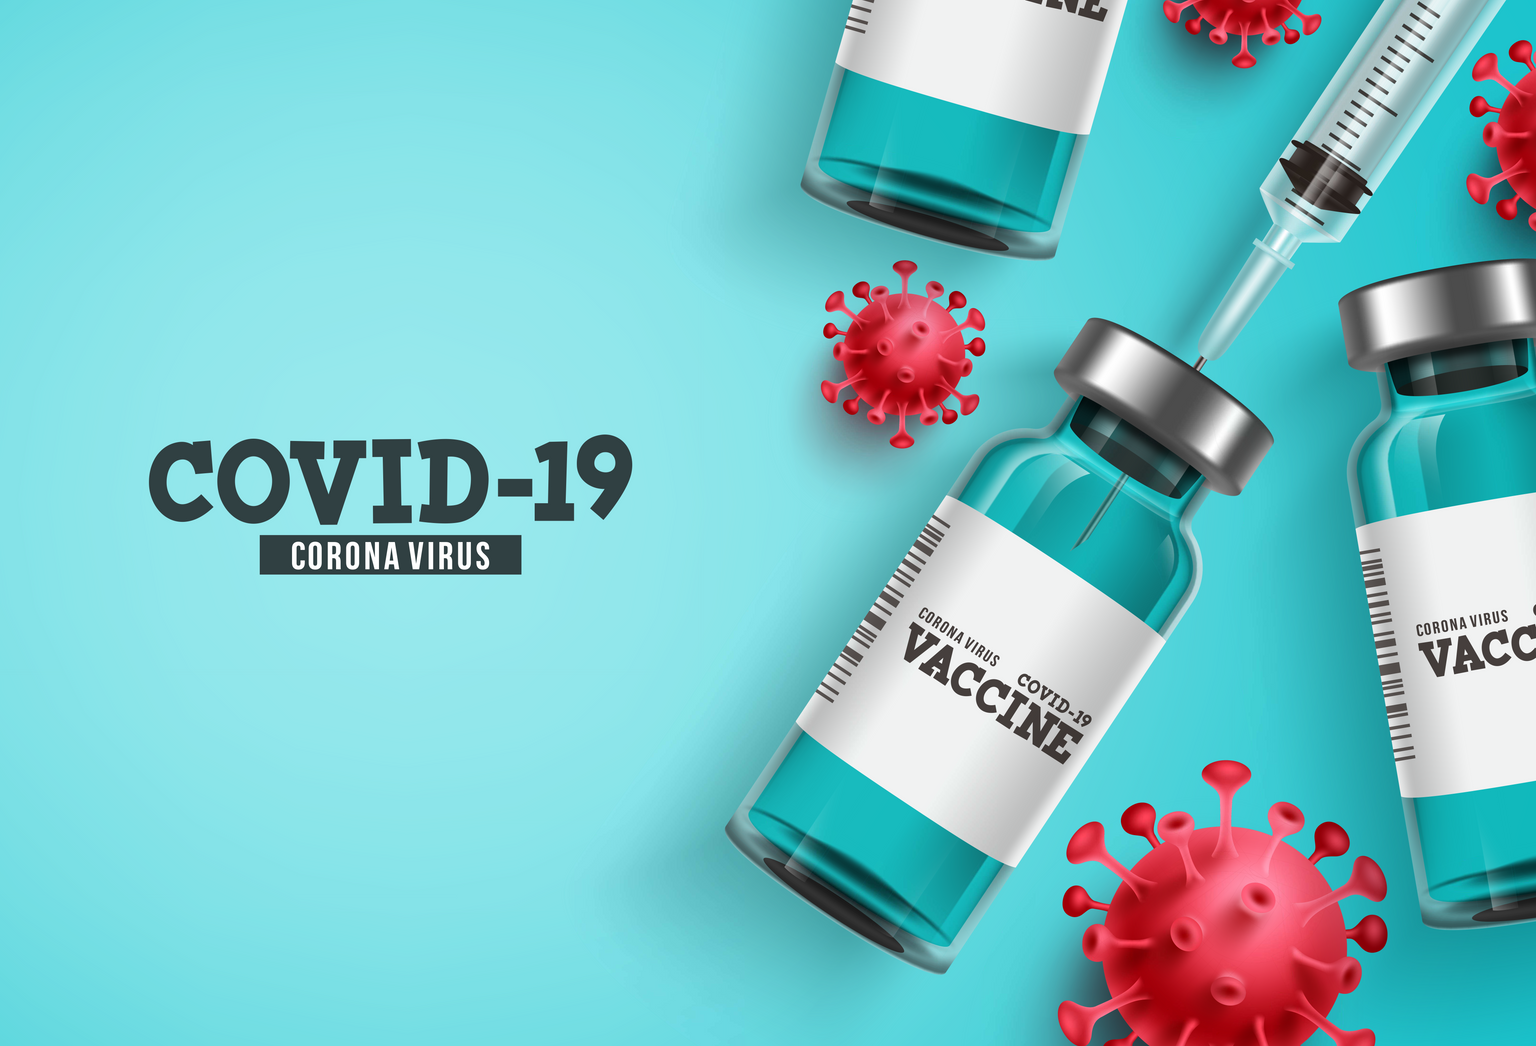 Arrière-plan du vaccin Covid-19 corona virus avec flacon de vaccin et outil d'injection seringue pour la vaccination Covid19. Illustration vectorielle.